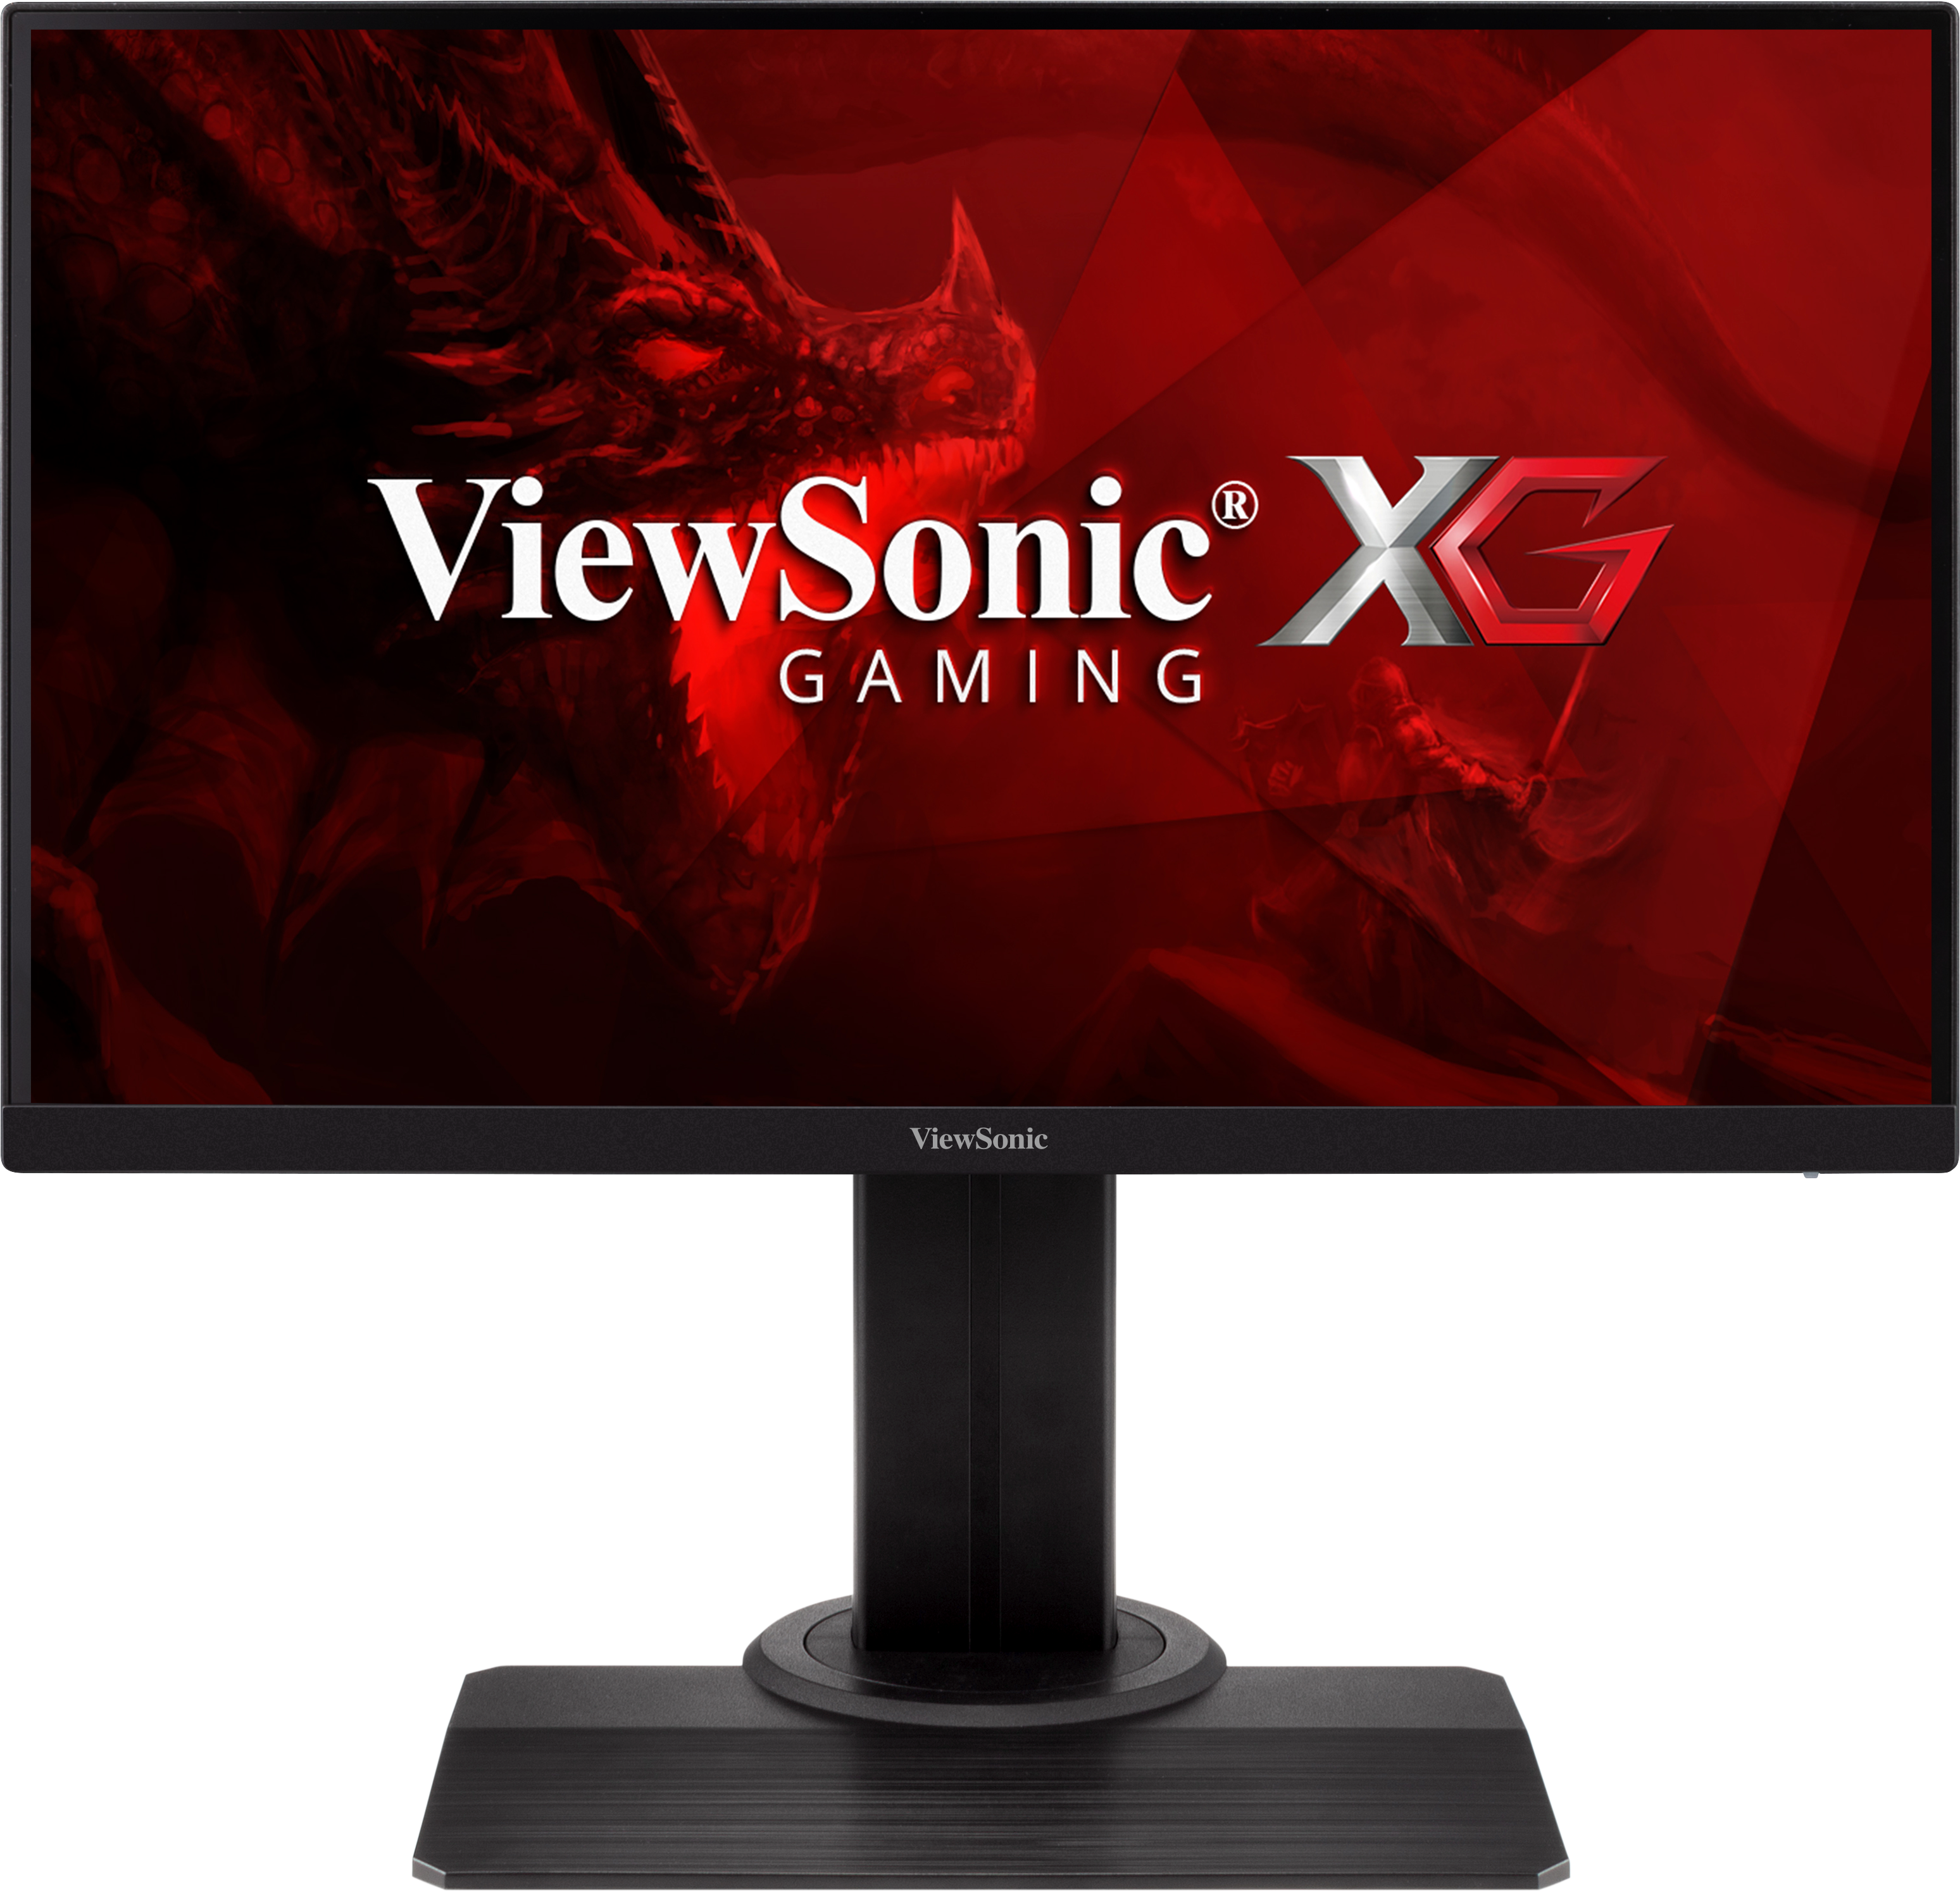 24-inch 144Hz IPS Gaming Monitor | XG2405 ViewSonic SG - ViewSonic